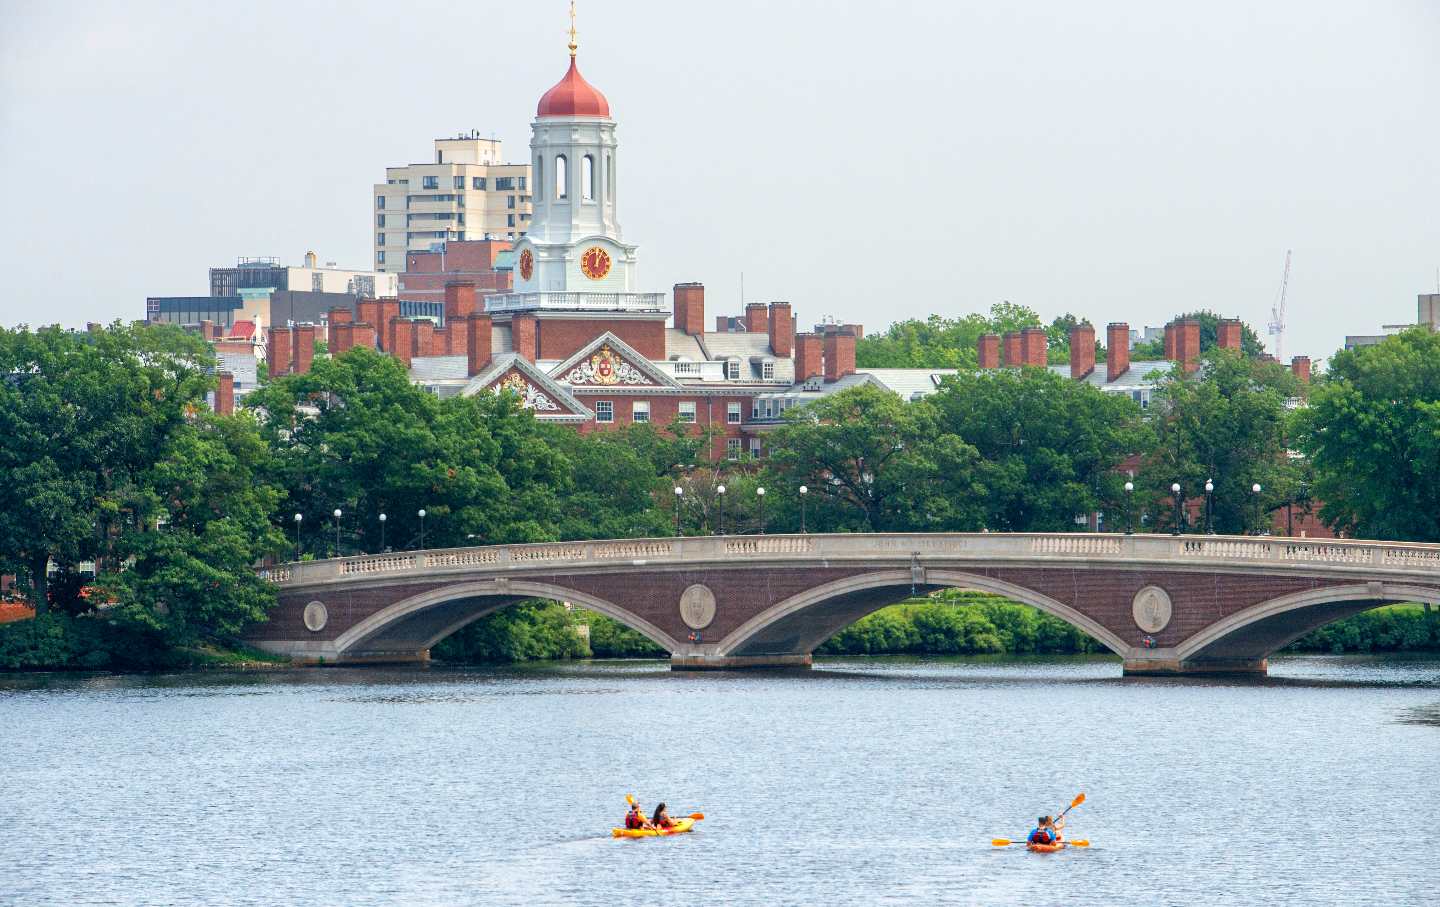 The Harvard University campus in Cambridge, Boston Massachusetts.